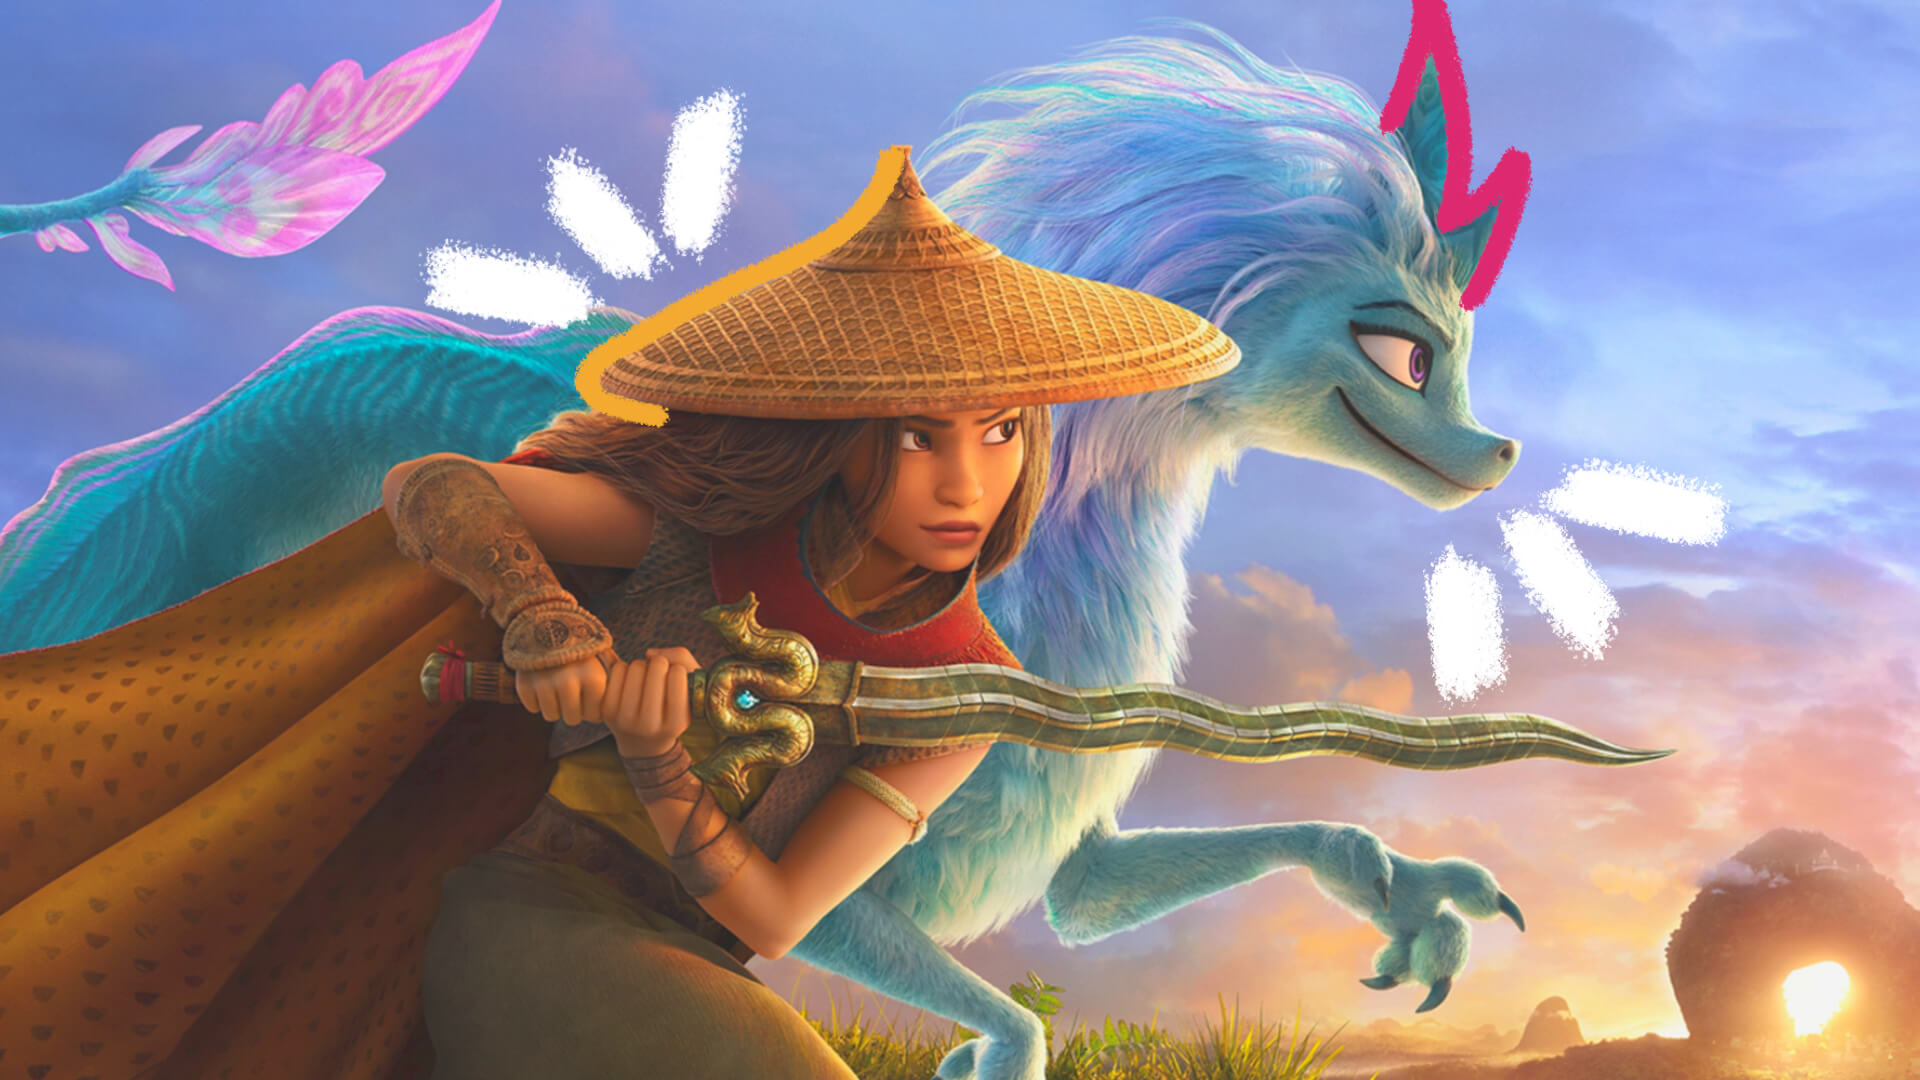 Animações Oscar 2022: ilustração com os personagens da animação infantil “Raya e o dragão”. A imagem mostra uma menina, com um chapéu na cabeça, que tem uma espada em suas mãos. Ao lado, está um animal de coloração azul clara.